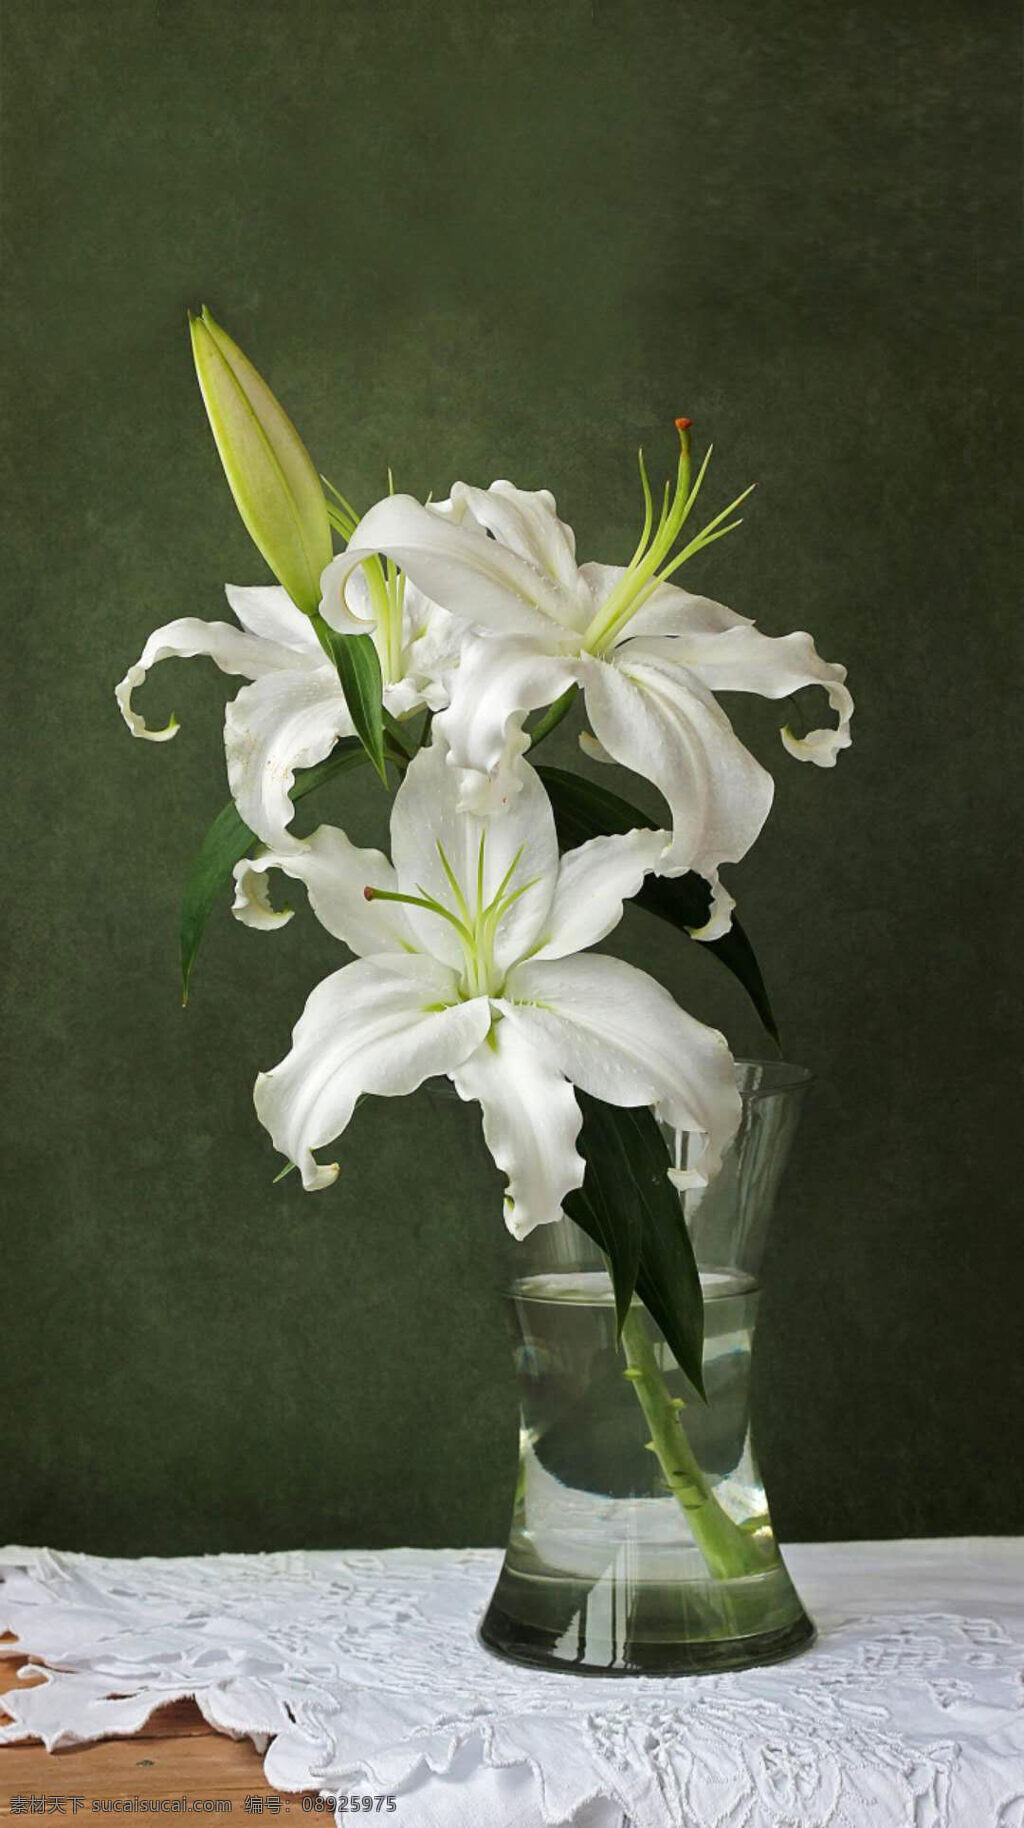 幽香的百合花 洁白的百合花 优雅的百合花 美丽的百合花 草本花卉 清新的百合花 生物世界 花草